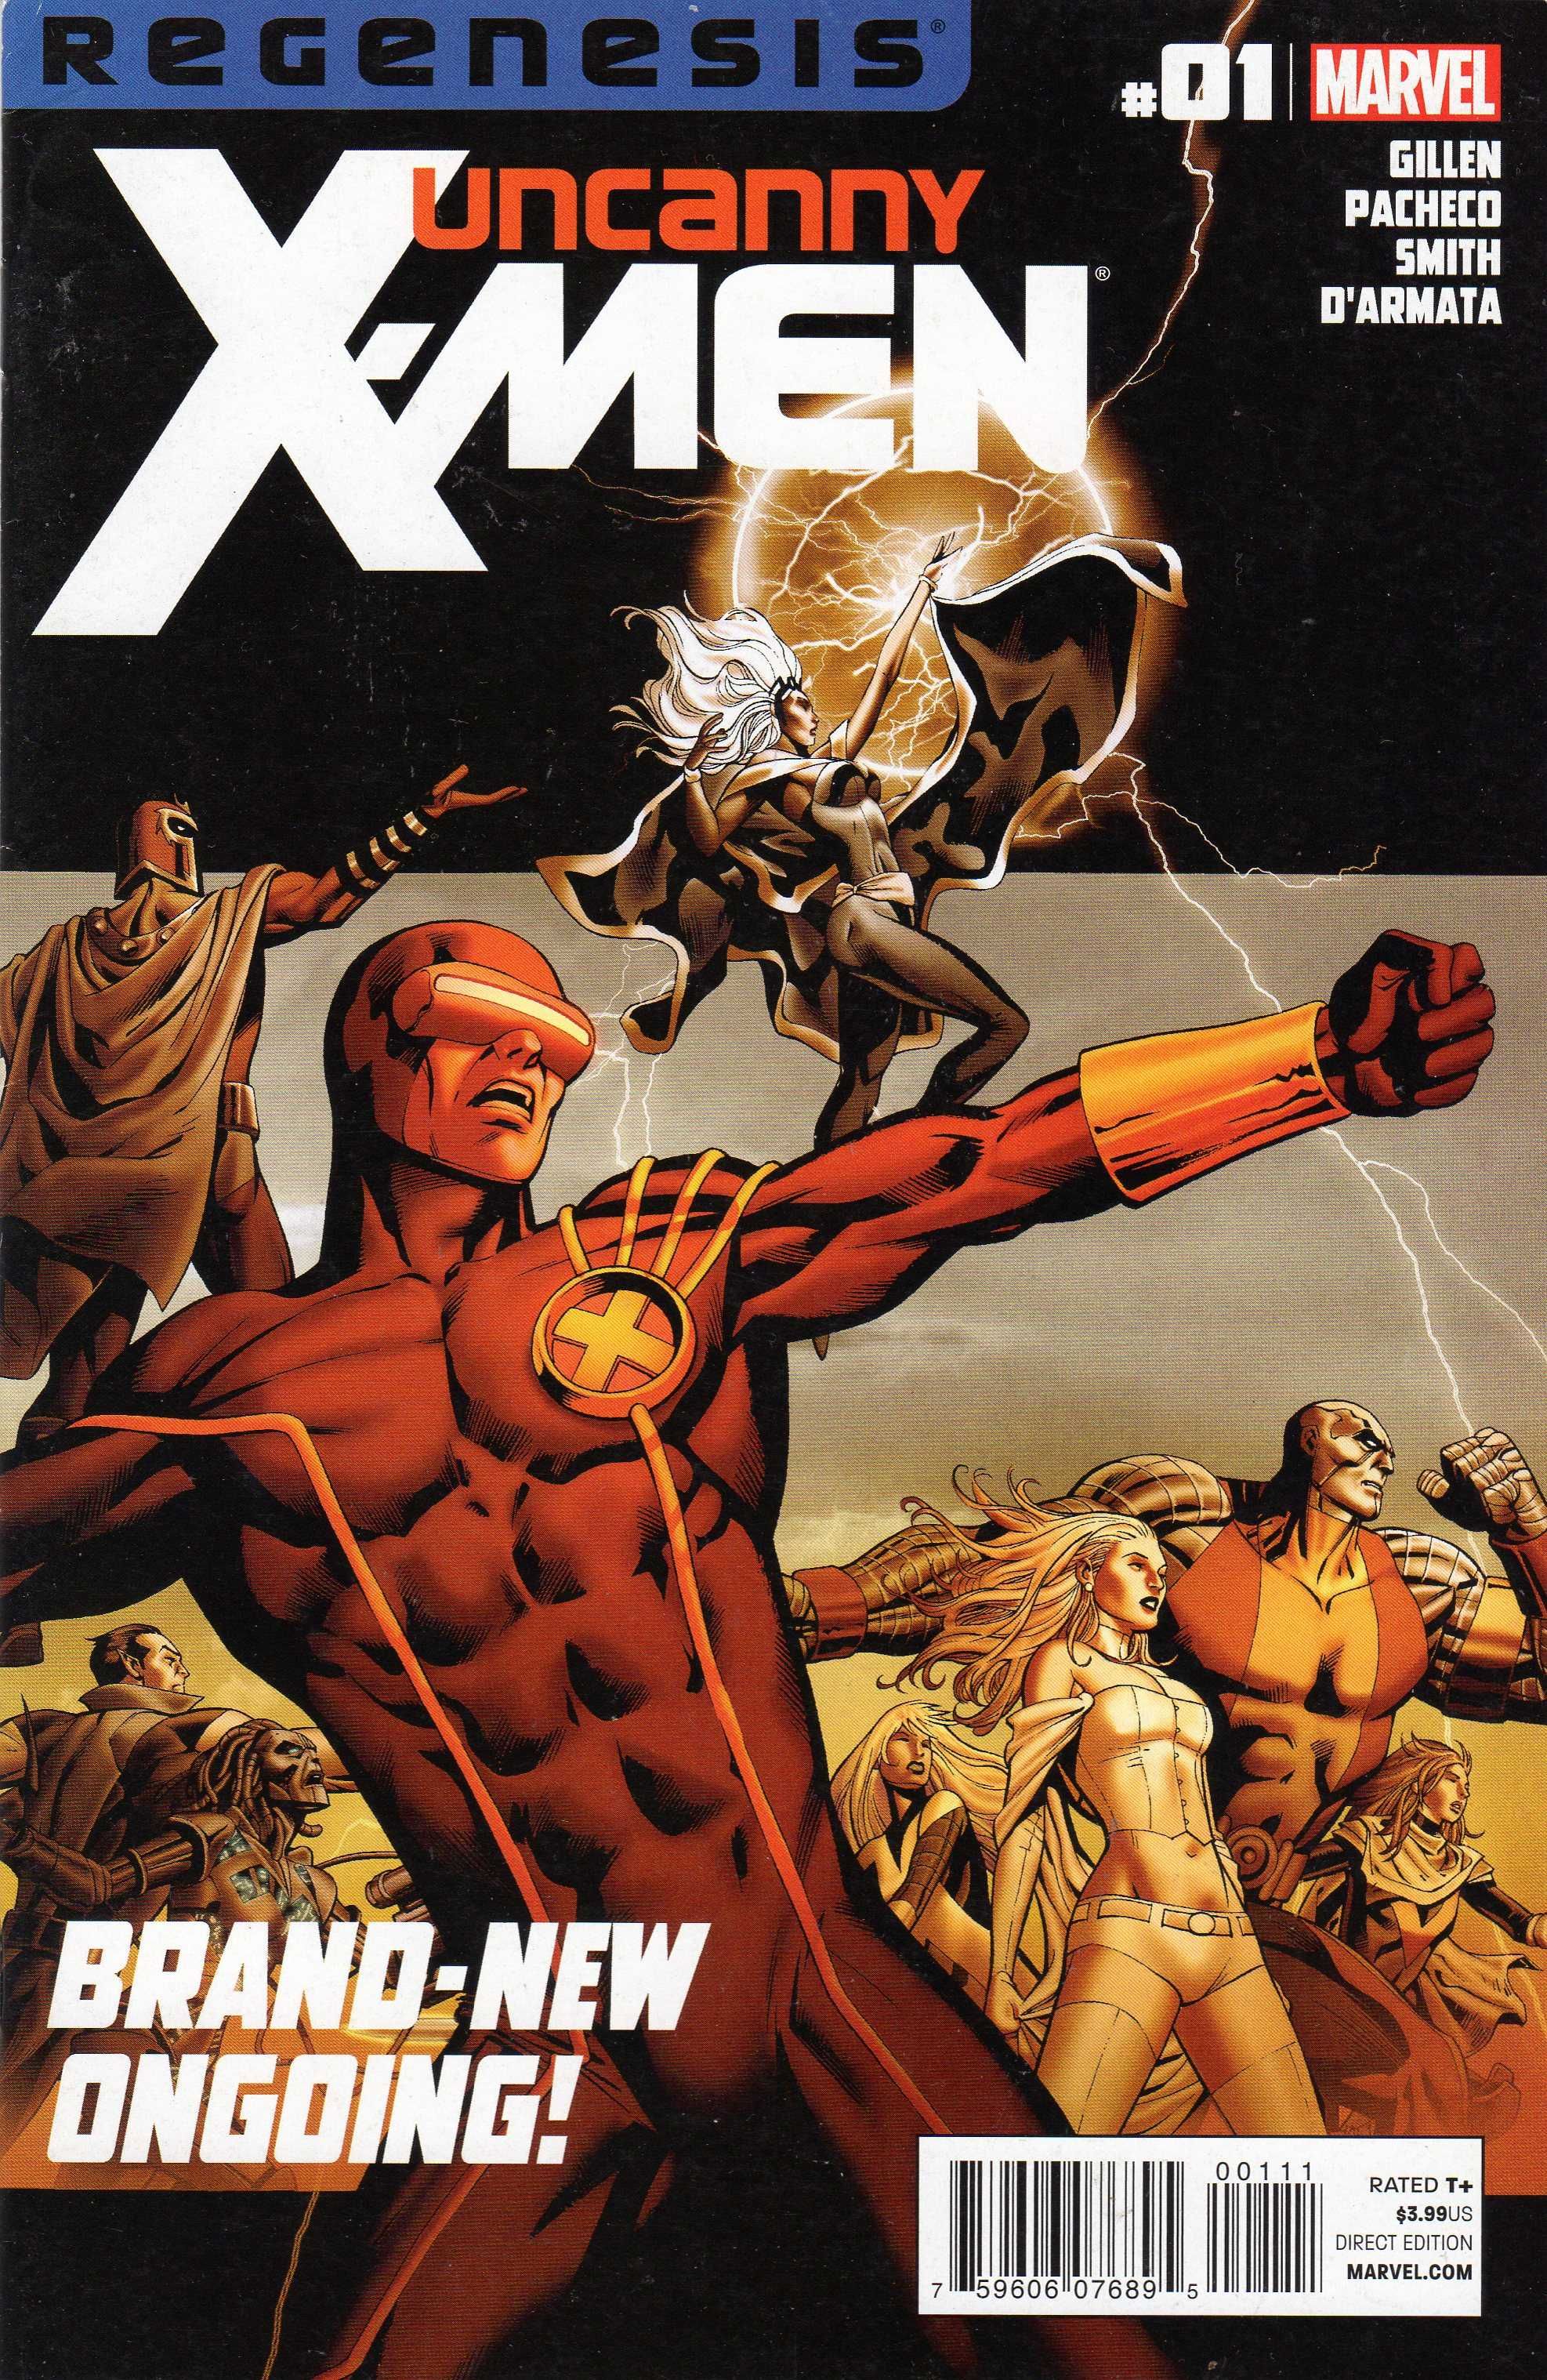 Uncanny X-Men #1 Regenesis benzi desenate americane